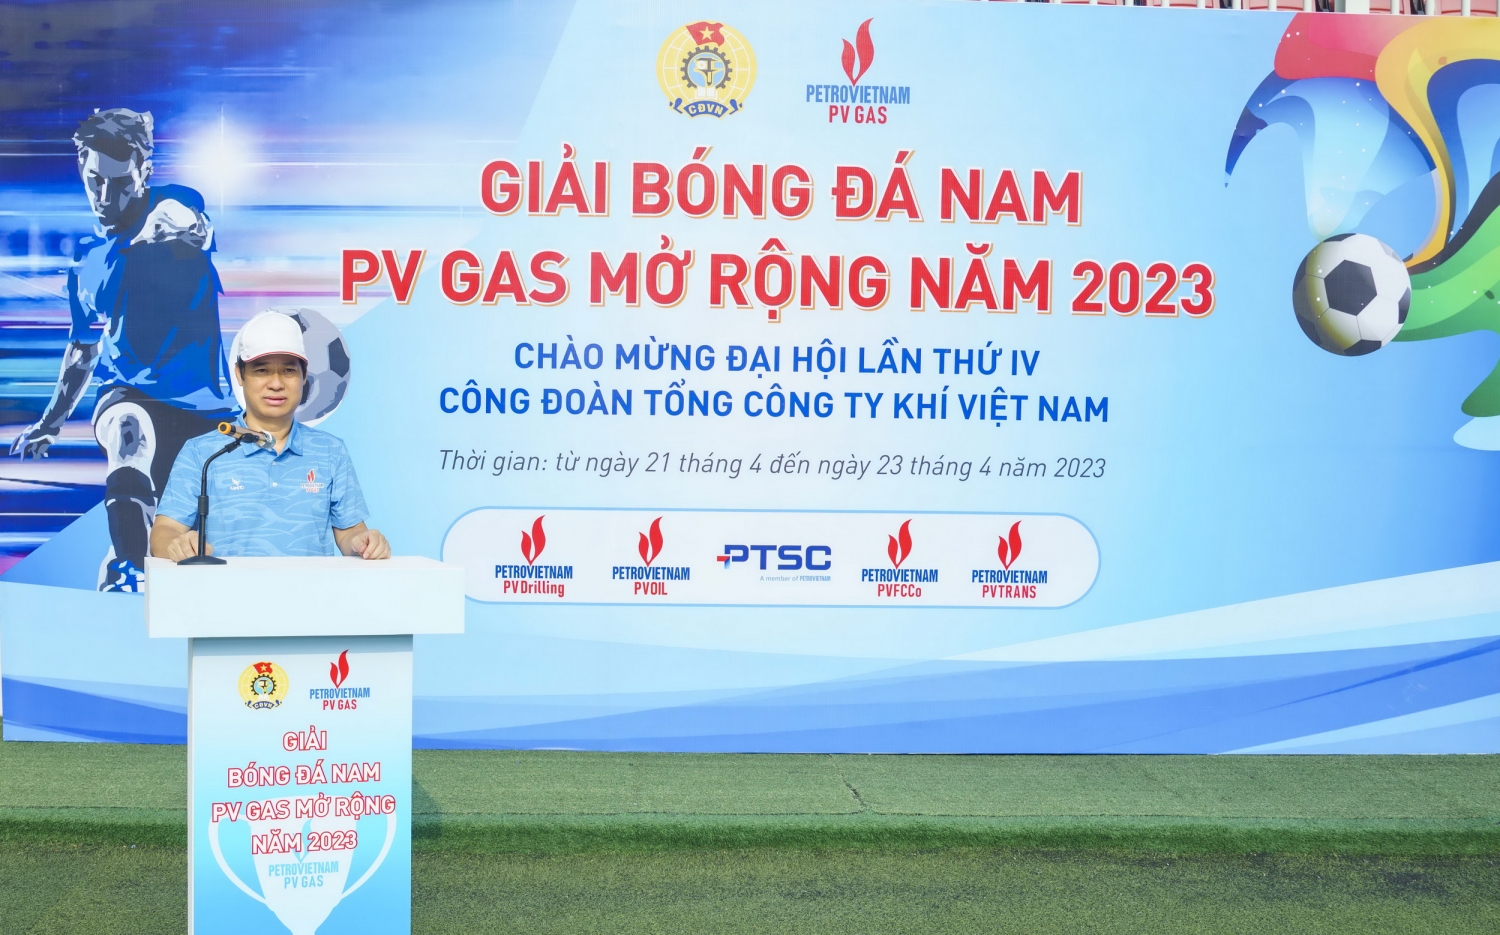 Ông Trần Xuân Thành - Chủ tịch Công đoàn PV GAS phát biểu khai mạc Giải, gửi lời chào mừng và chúc các đội tuyển thi đấu thành công